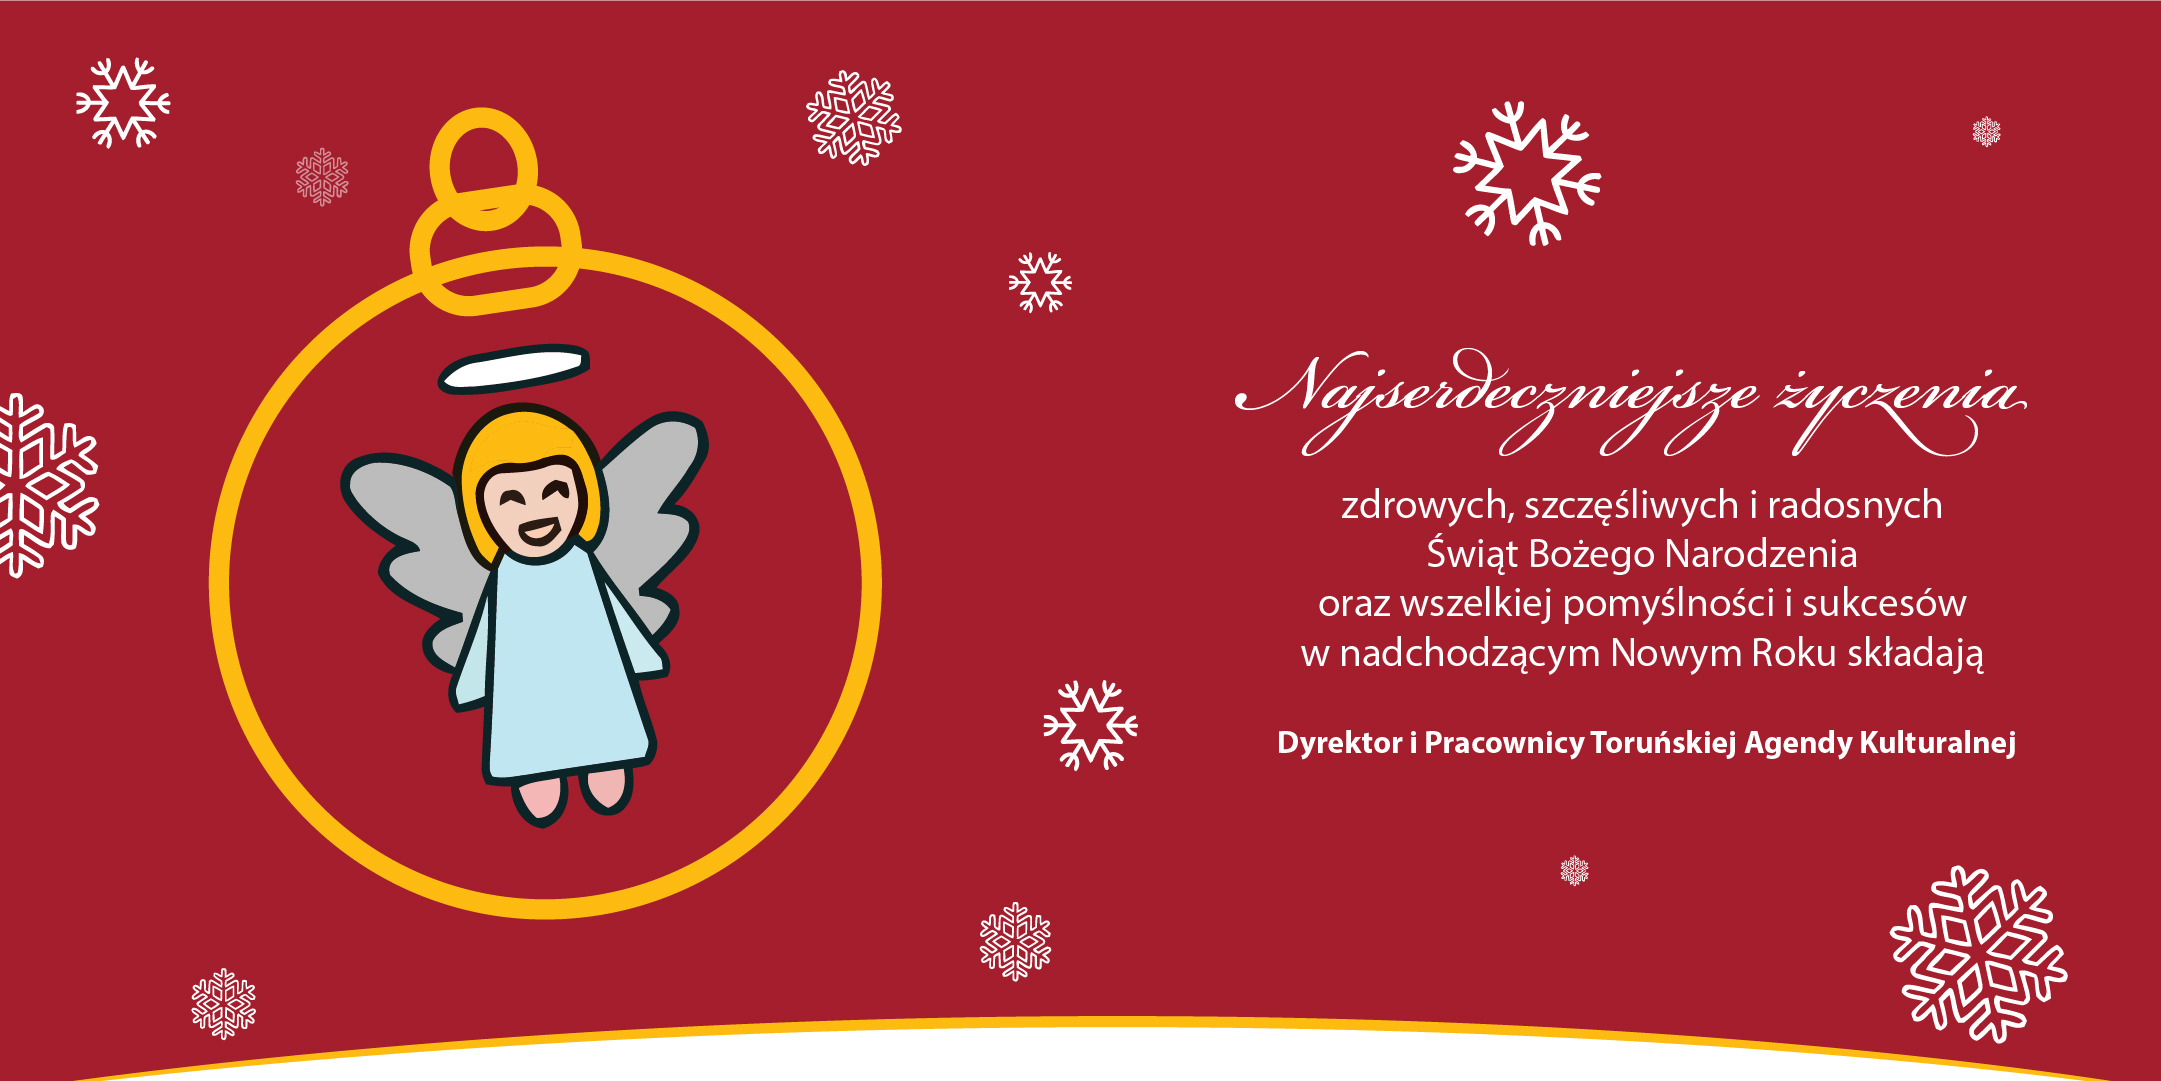 Najserdeczniejsze życzenia zdrowych, szcześciwych i radosnych Świąt Bożego Narodzenia oraz wszelkiej pomyślności i sukcesów w nadchodzącym Nowym Roku składają Dyrektor i Pracownicy Toruńskiej Agendy Kulturalnej